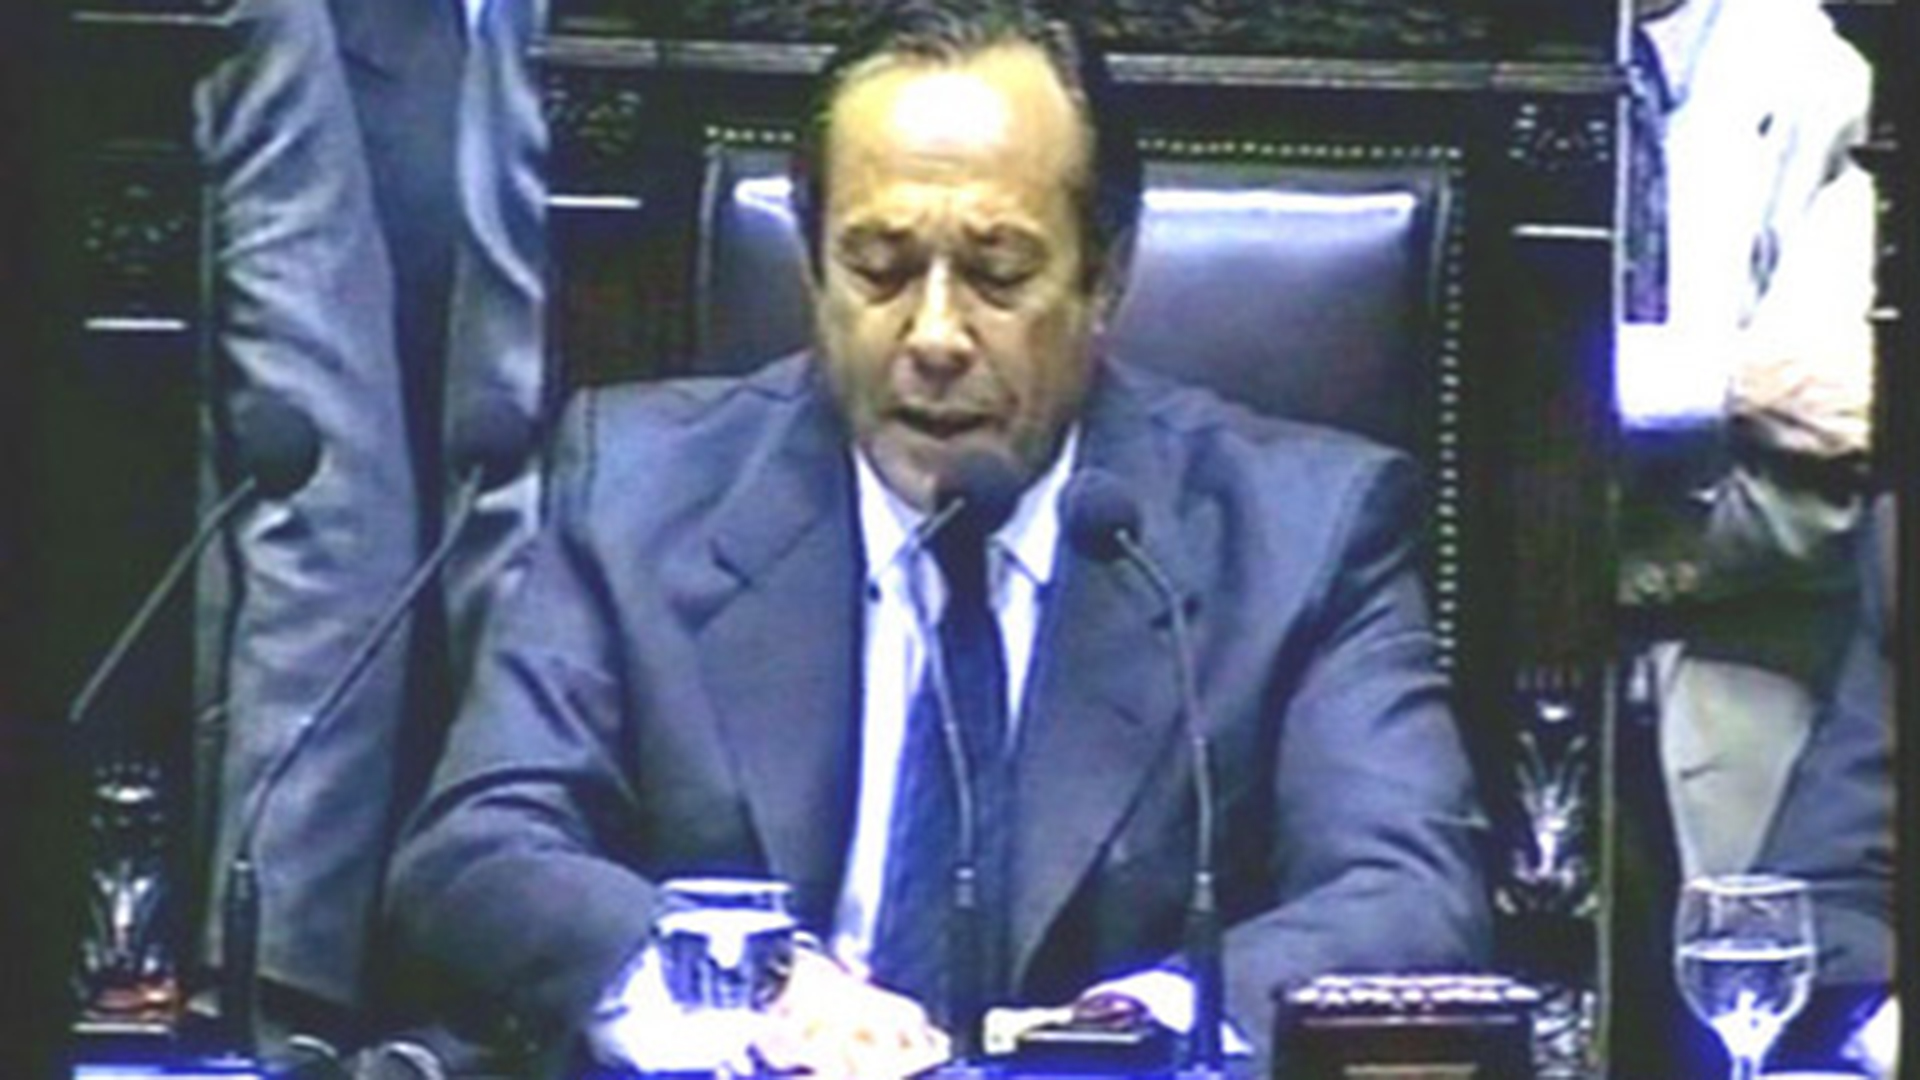 En el Congreso y con aplausos, Adolfo Rodríguez Saa anunció el default de la deuda pública en su breve presidencia sobre el final de 2001